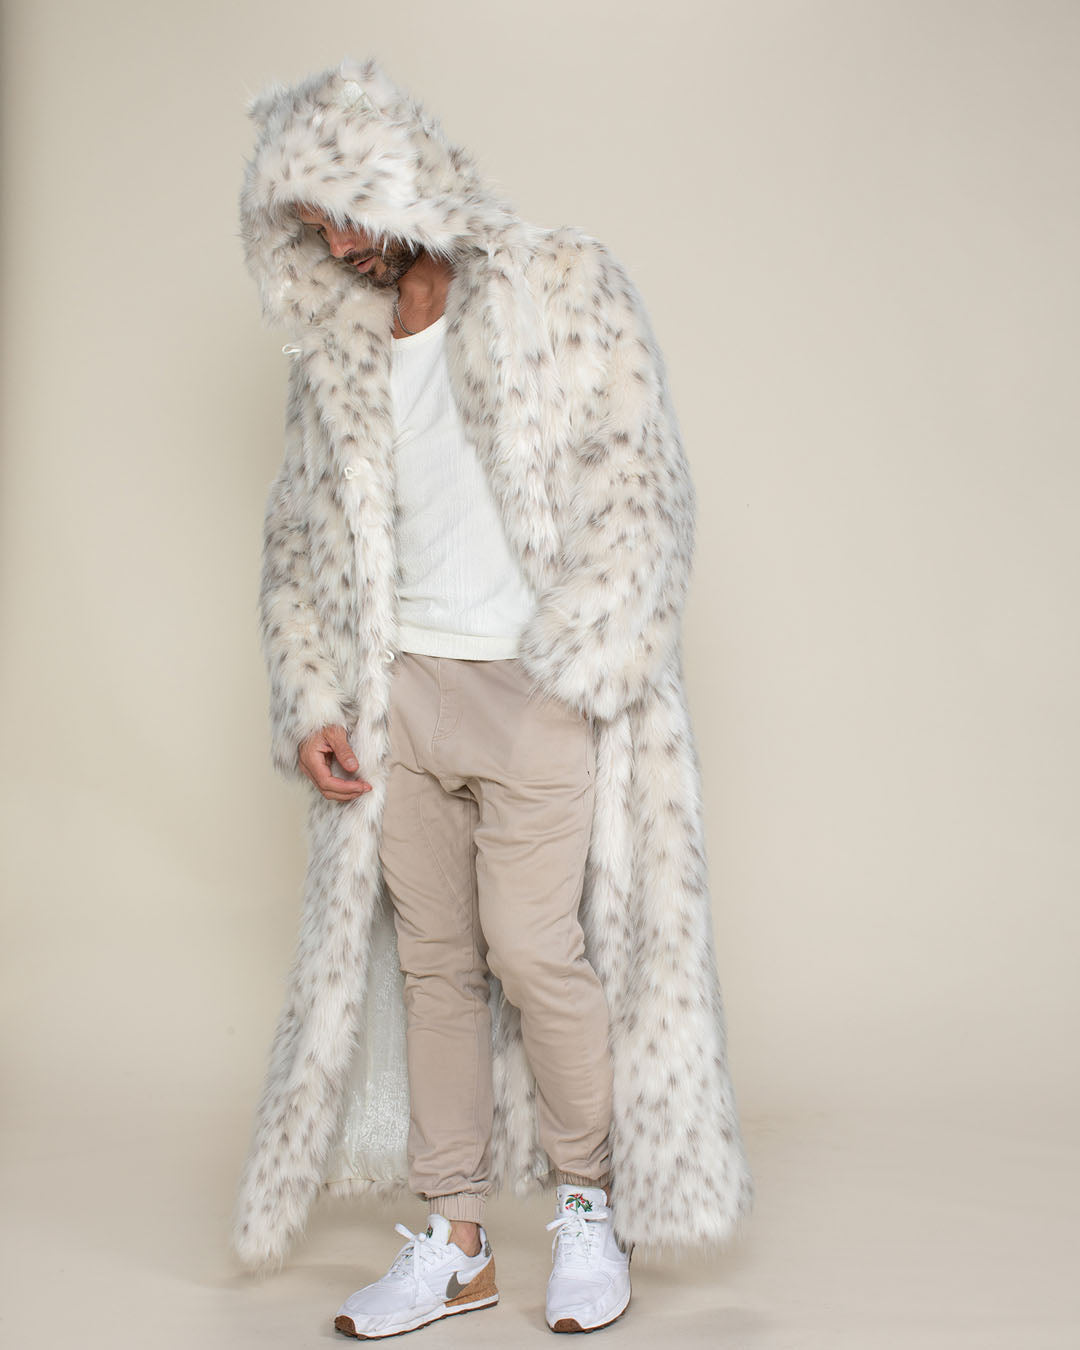 Leopard Faux Fur Coat – Hapa Time